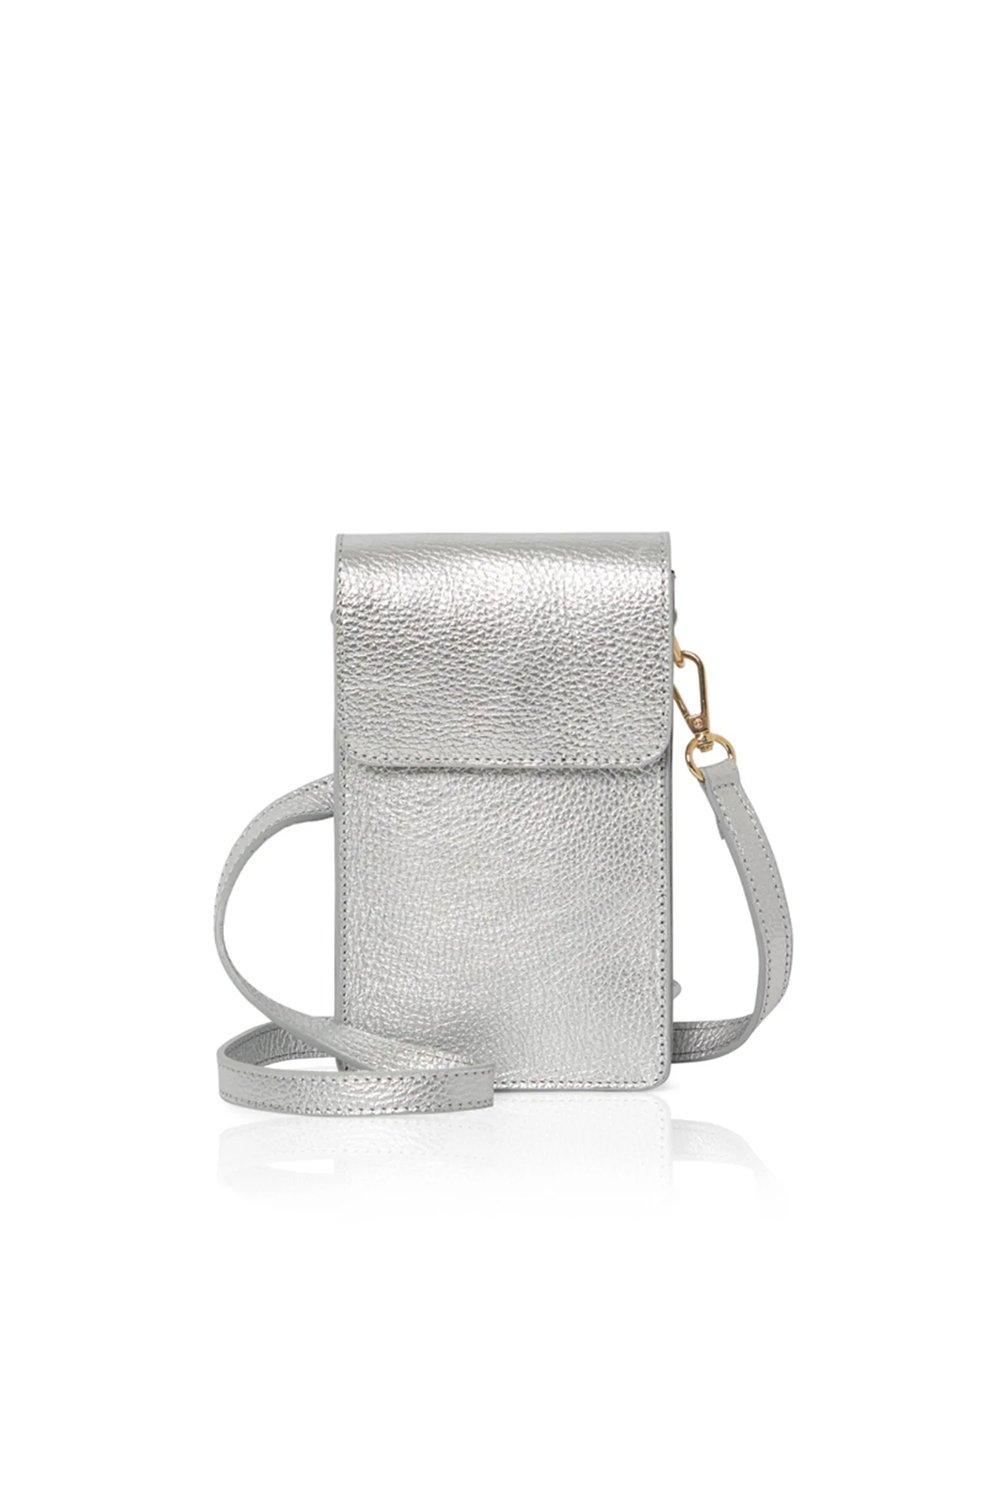 Маленькая сумка через плечо 'Vico' Betsy & Floss, серебро фото